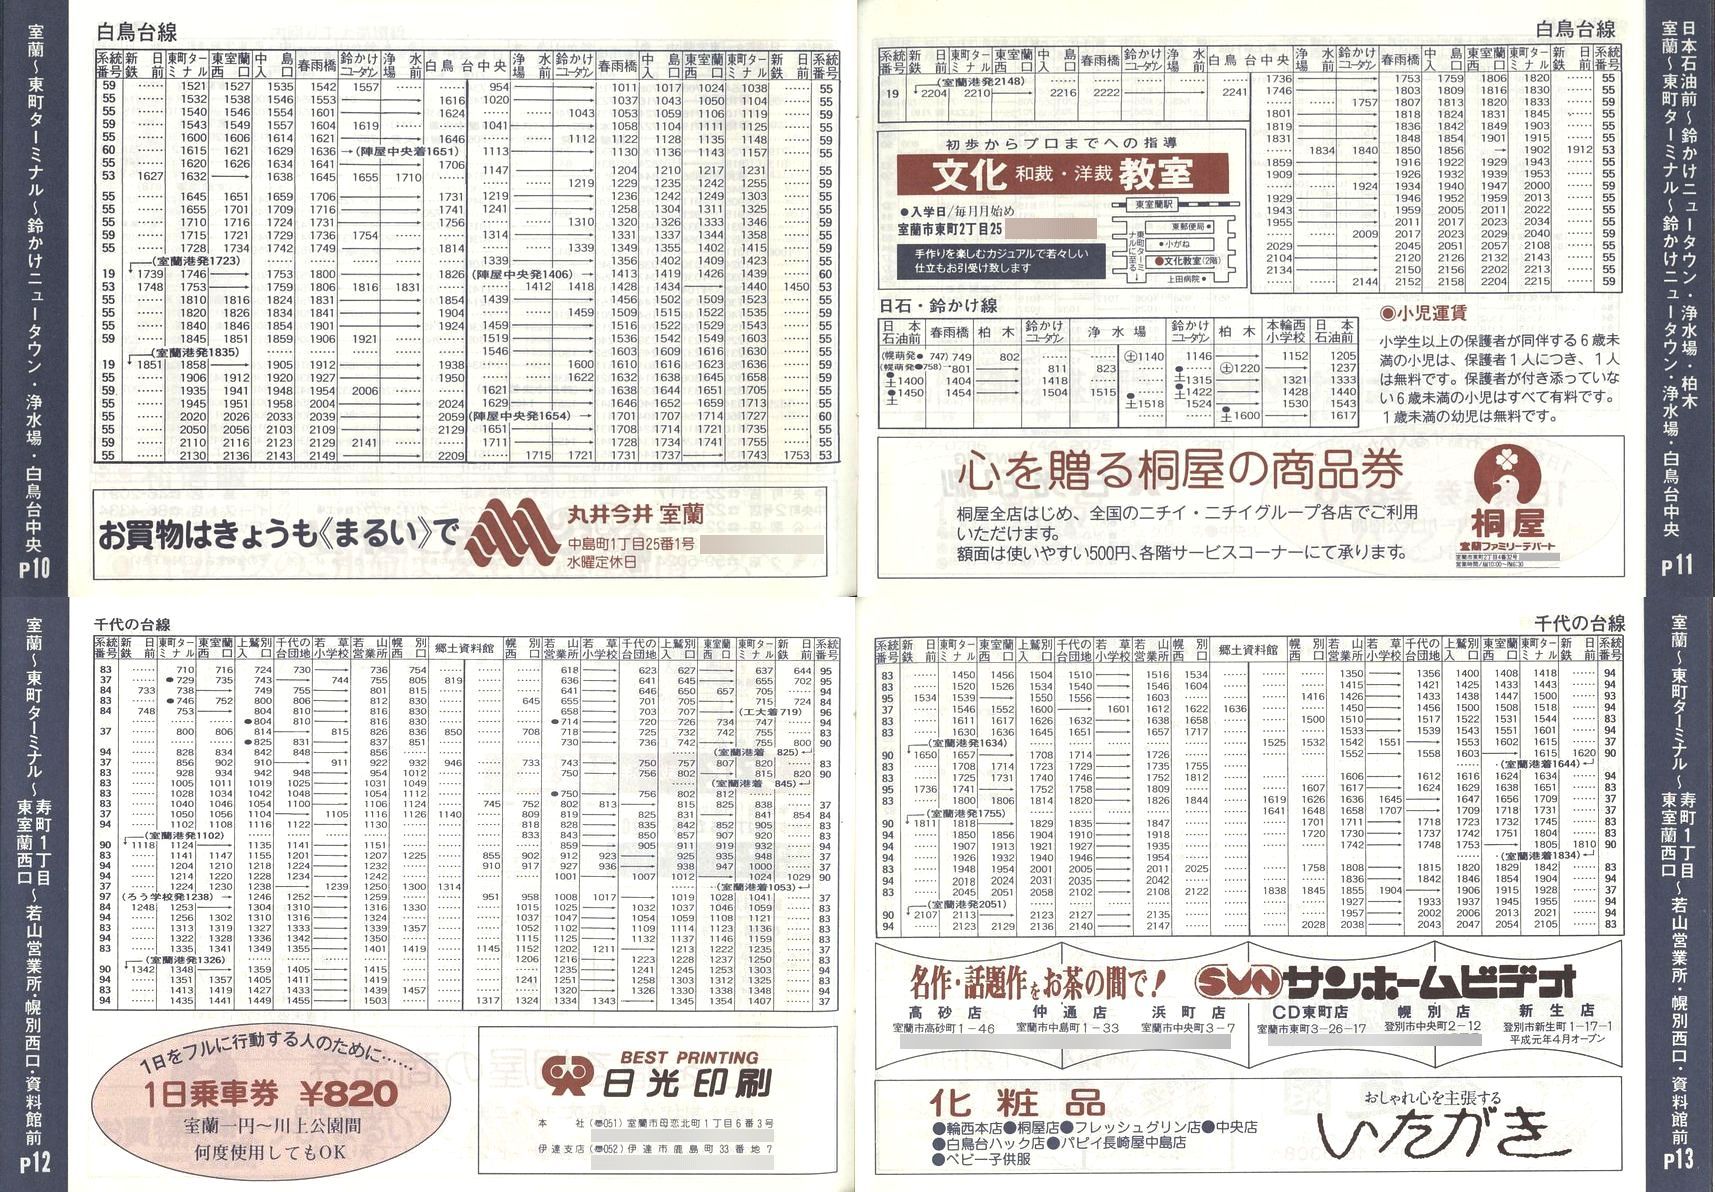 1989-04-01改正_道南バス_室蘭市内線冊子時刻表10-13